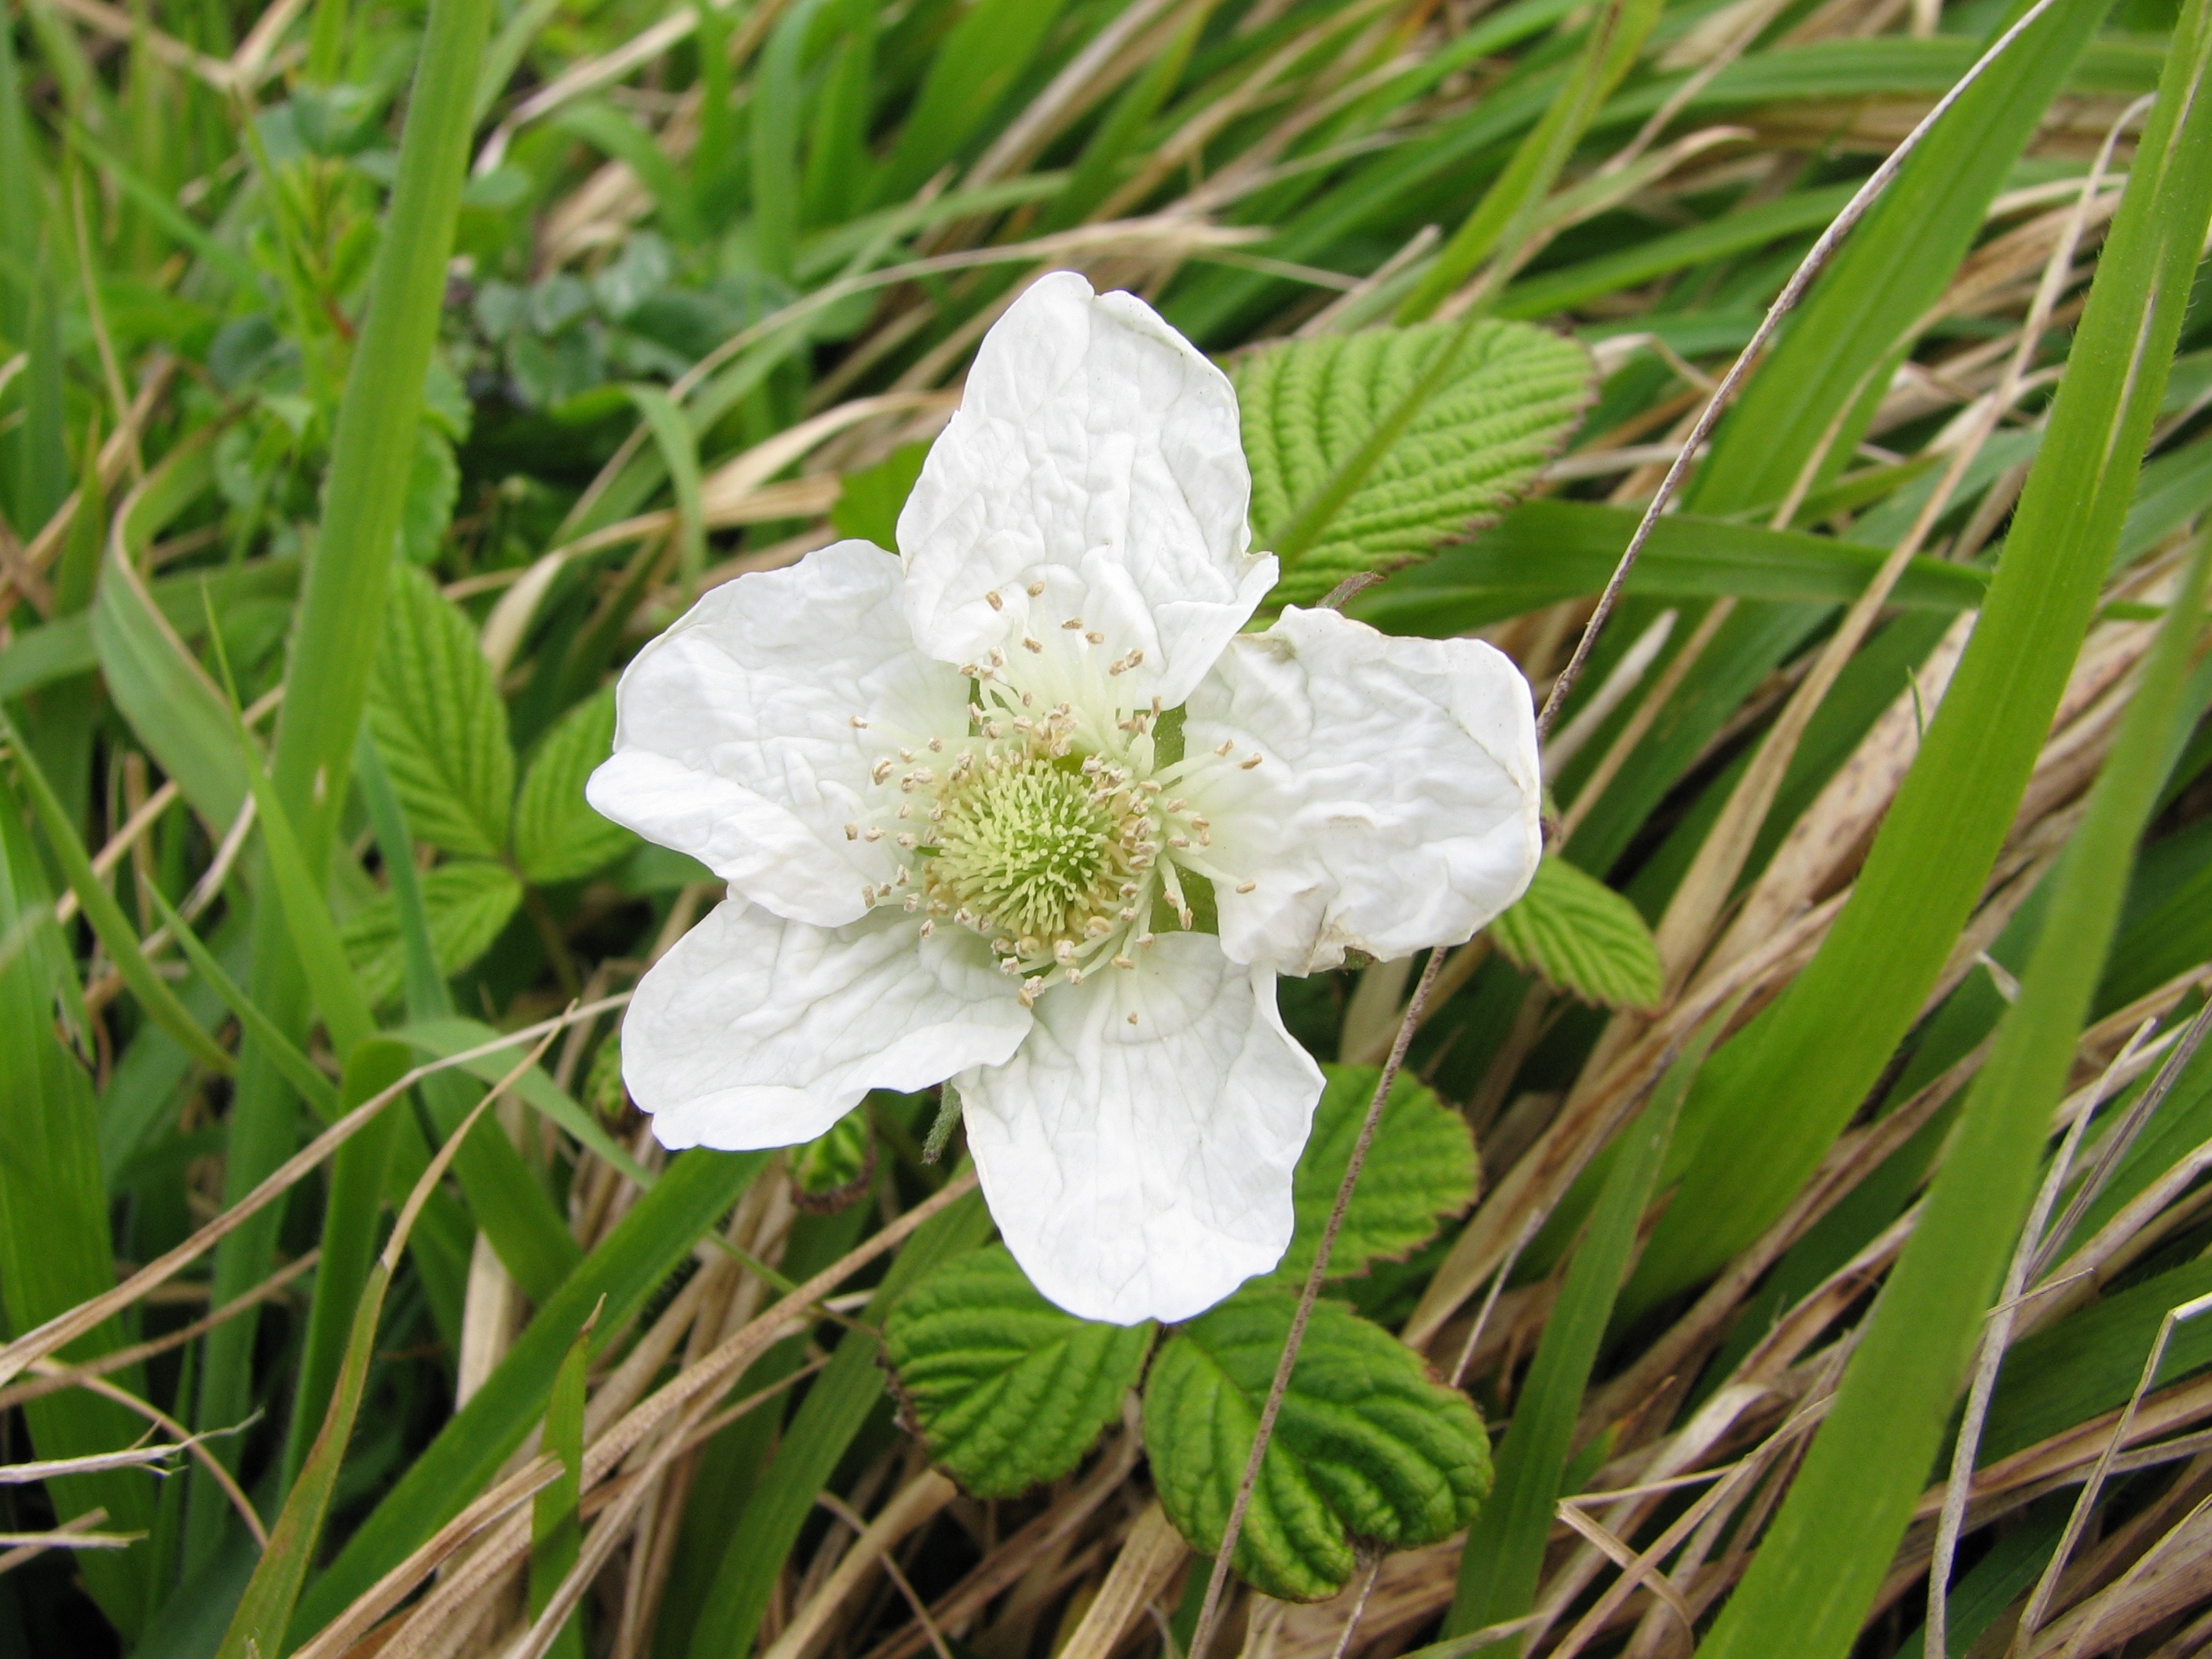 white 5 petaled flower